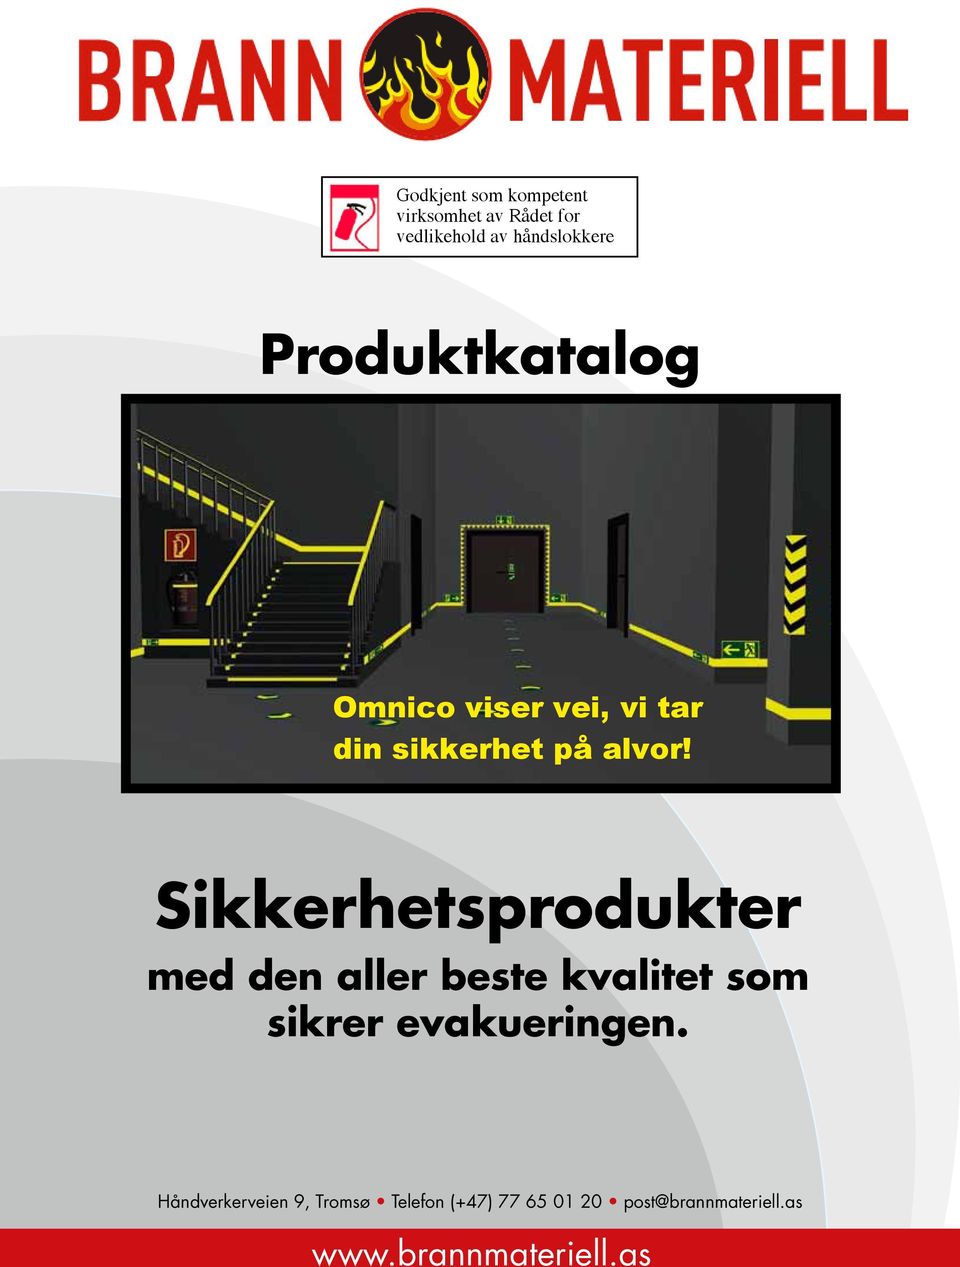 Sikkerhetsprodukter med den aller beste kvalitet som sikrer evakueringen Sikkerhetsprodukter Breivikvegen 21 med den aller N-4120 beste Tau